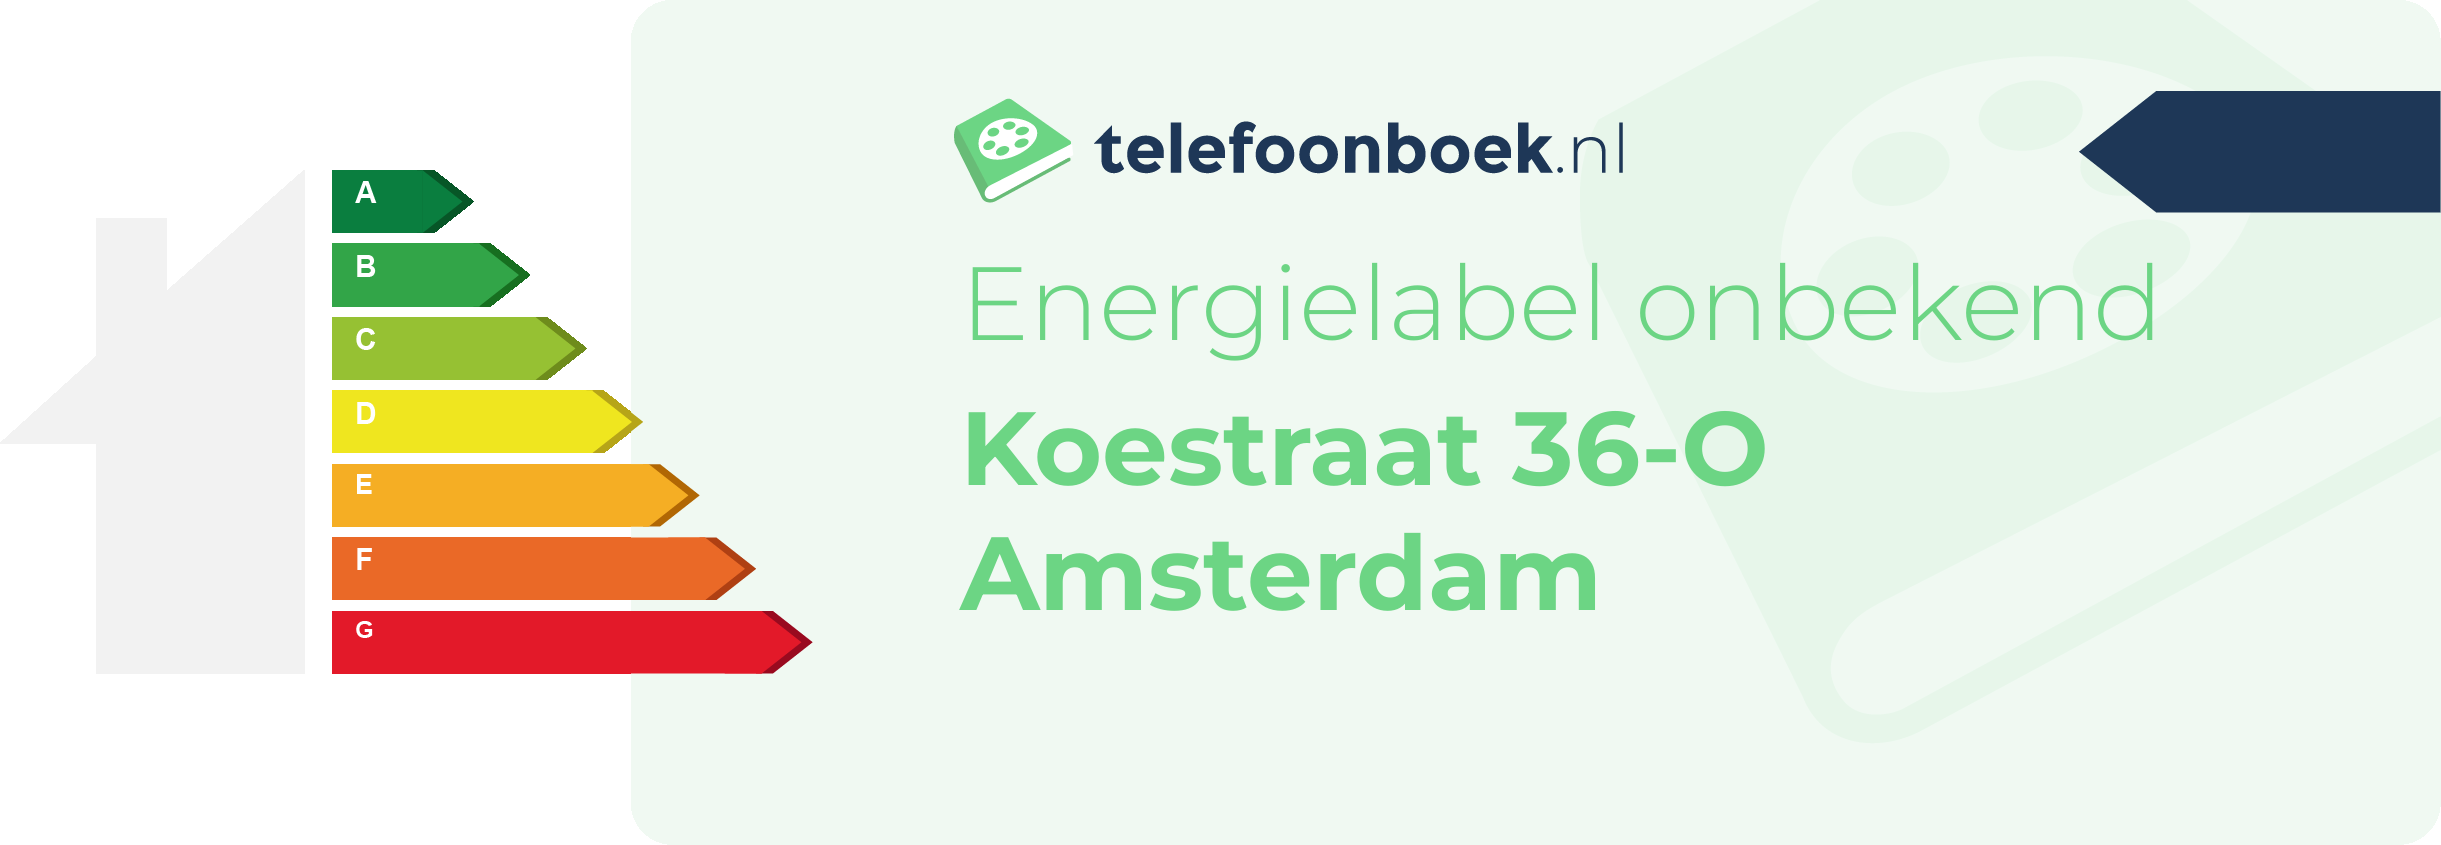 Energielabel Koestraat 36-O Amsterdam